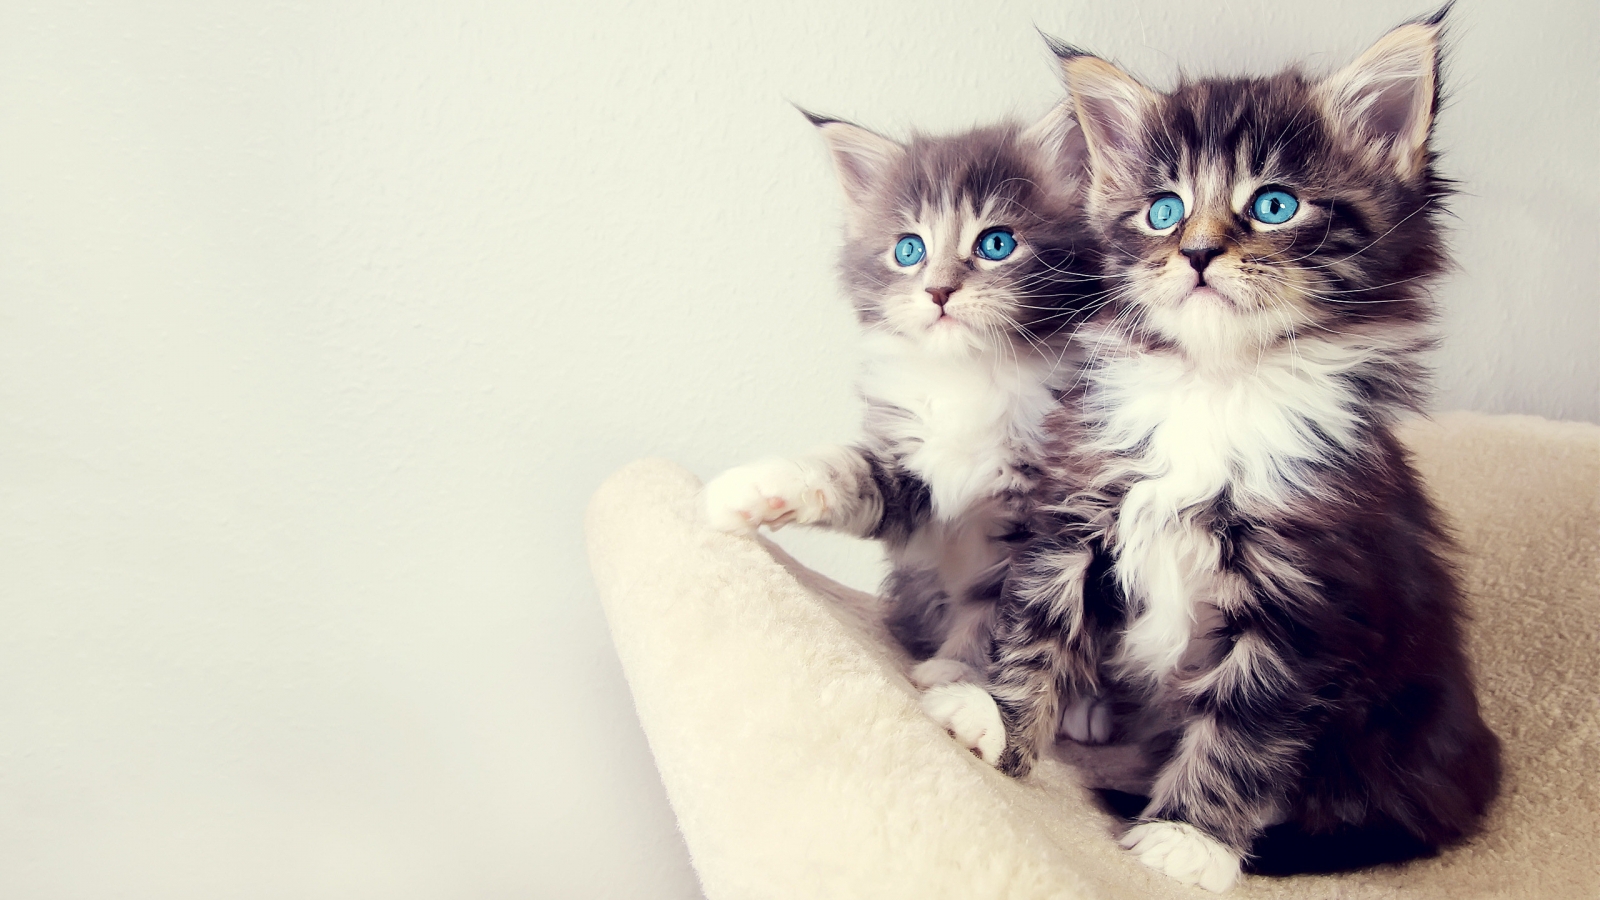 Gorgeous Kittens for 1600 x 900 HDTV resolution